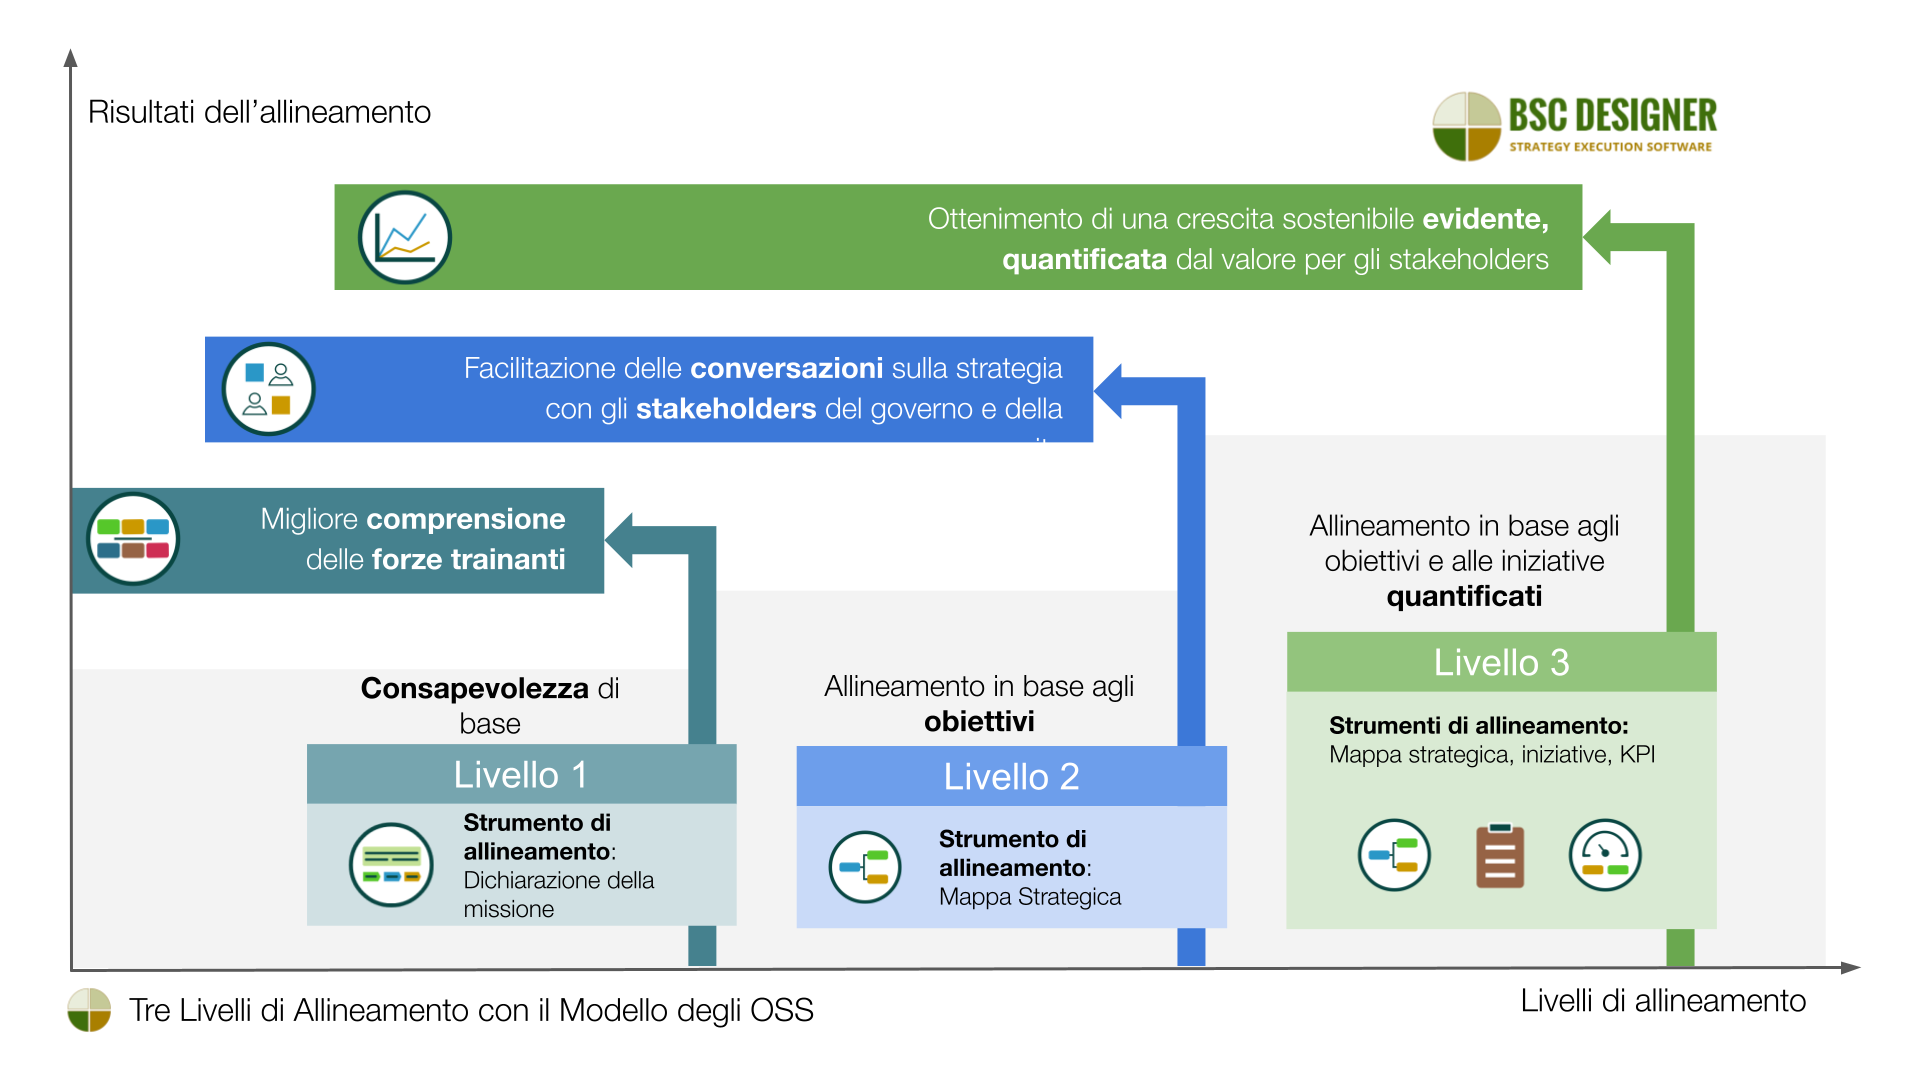 Tre livelli di allineamento con il modello degli Obiettivi di Sviluppo Sostenibile